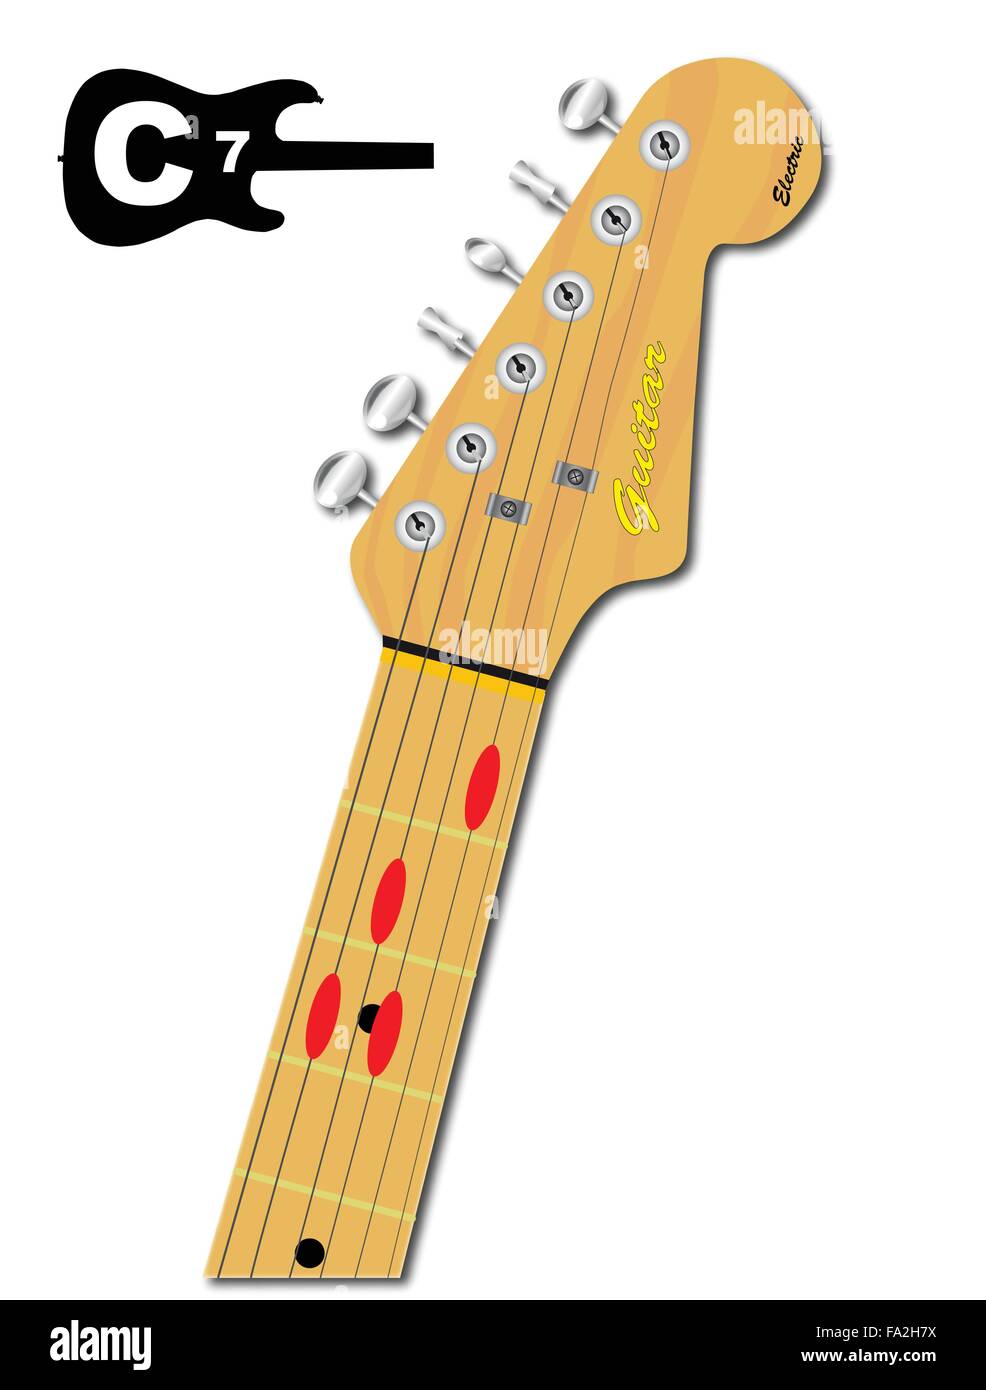 Una chitarra elettrica del collo con la conformazione a corda di circonferenza per C settimo indicato con pulsanti rossi Illustrazione Vettoriale